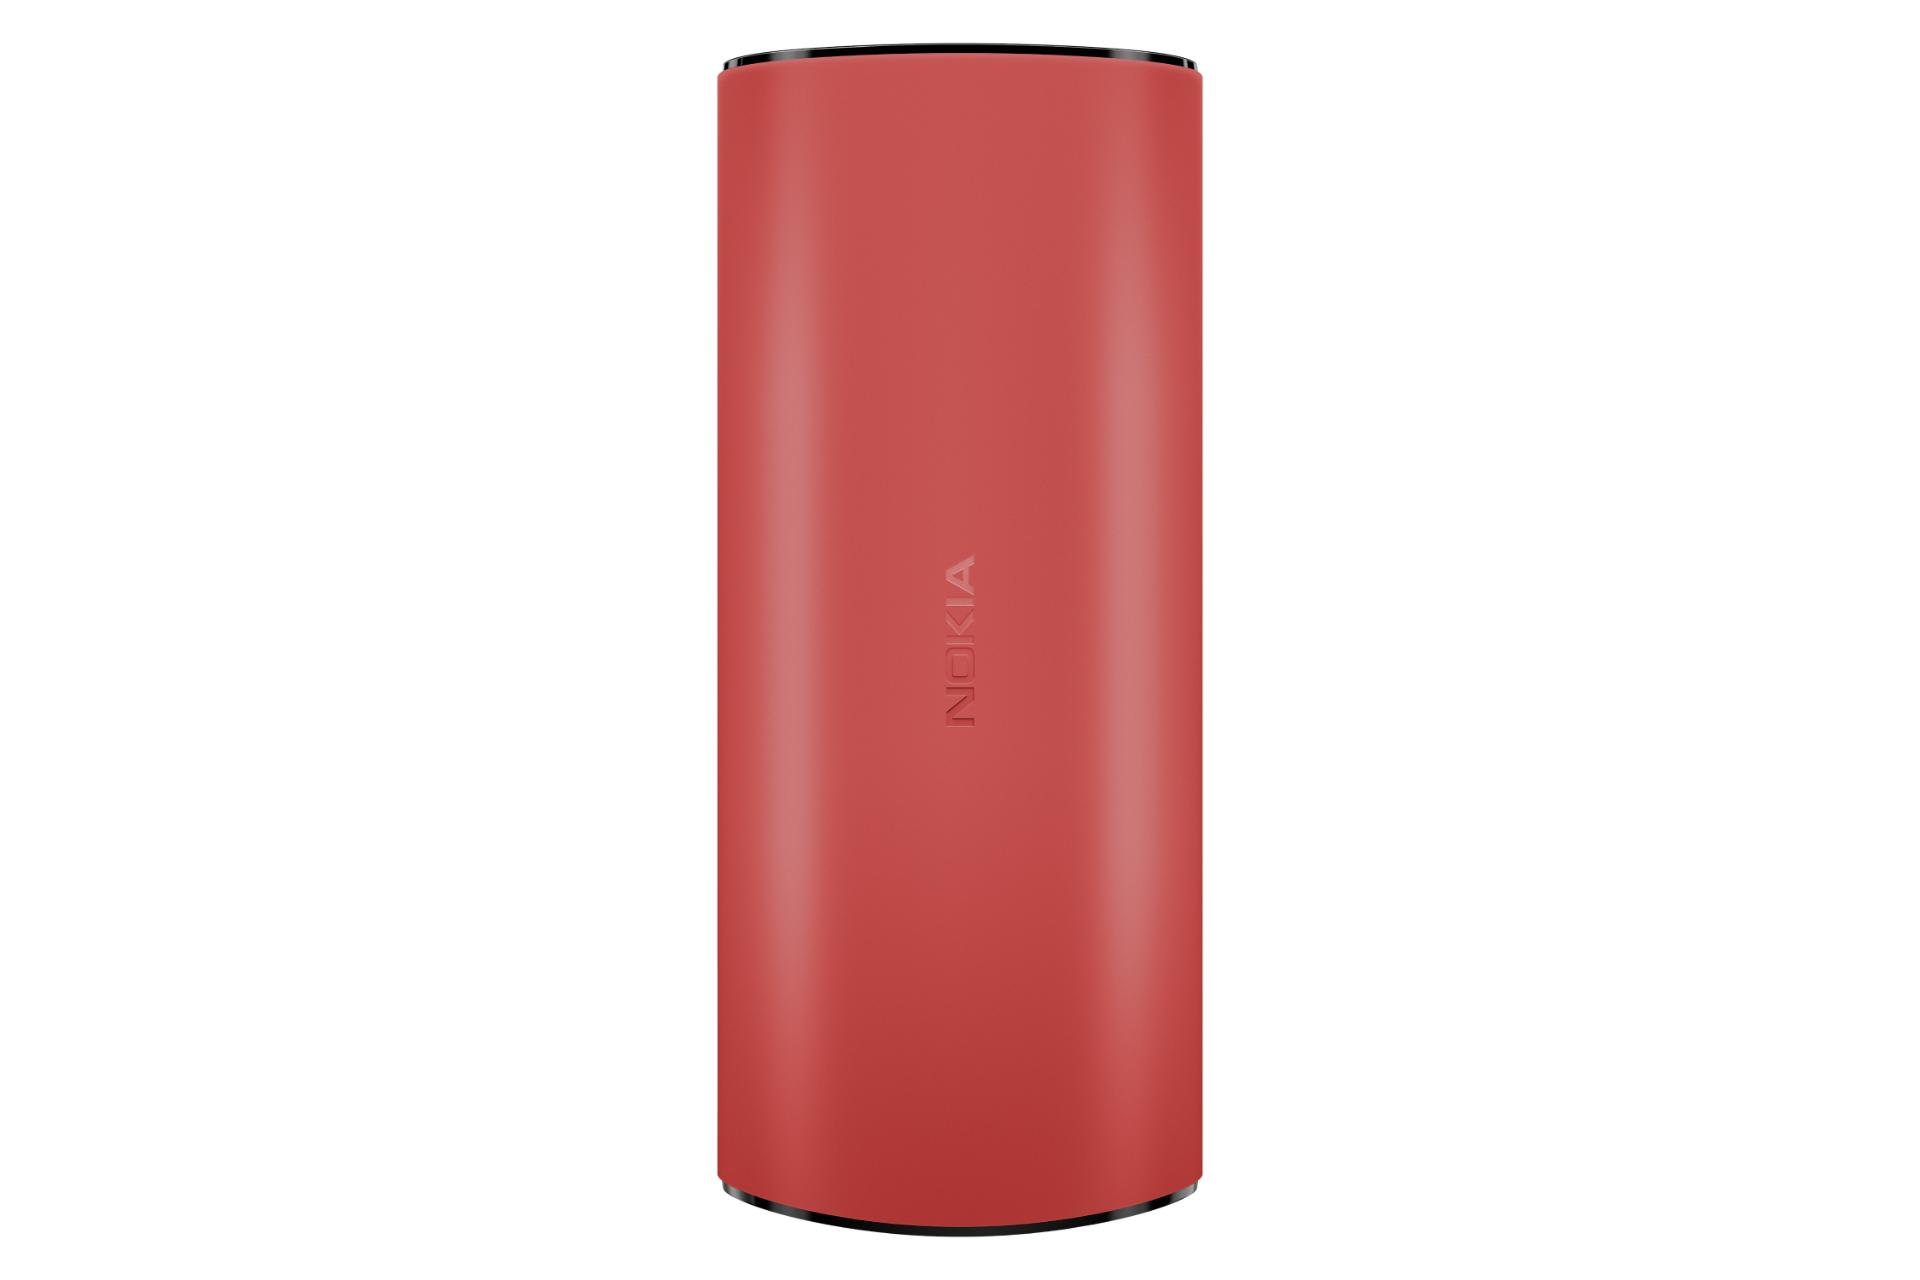 پنل پشت Nokia 105 4G گوشی موبایل نوکیا 105 نسخه 4G قرمز